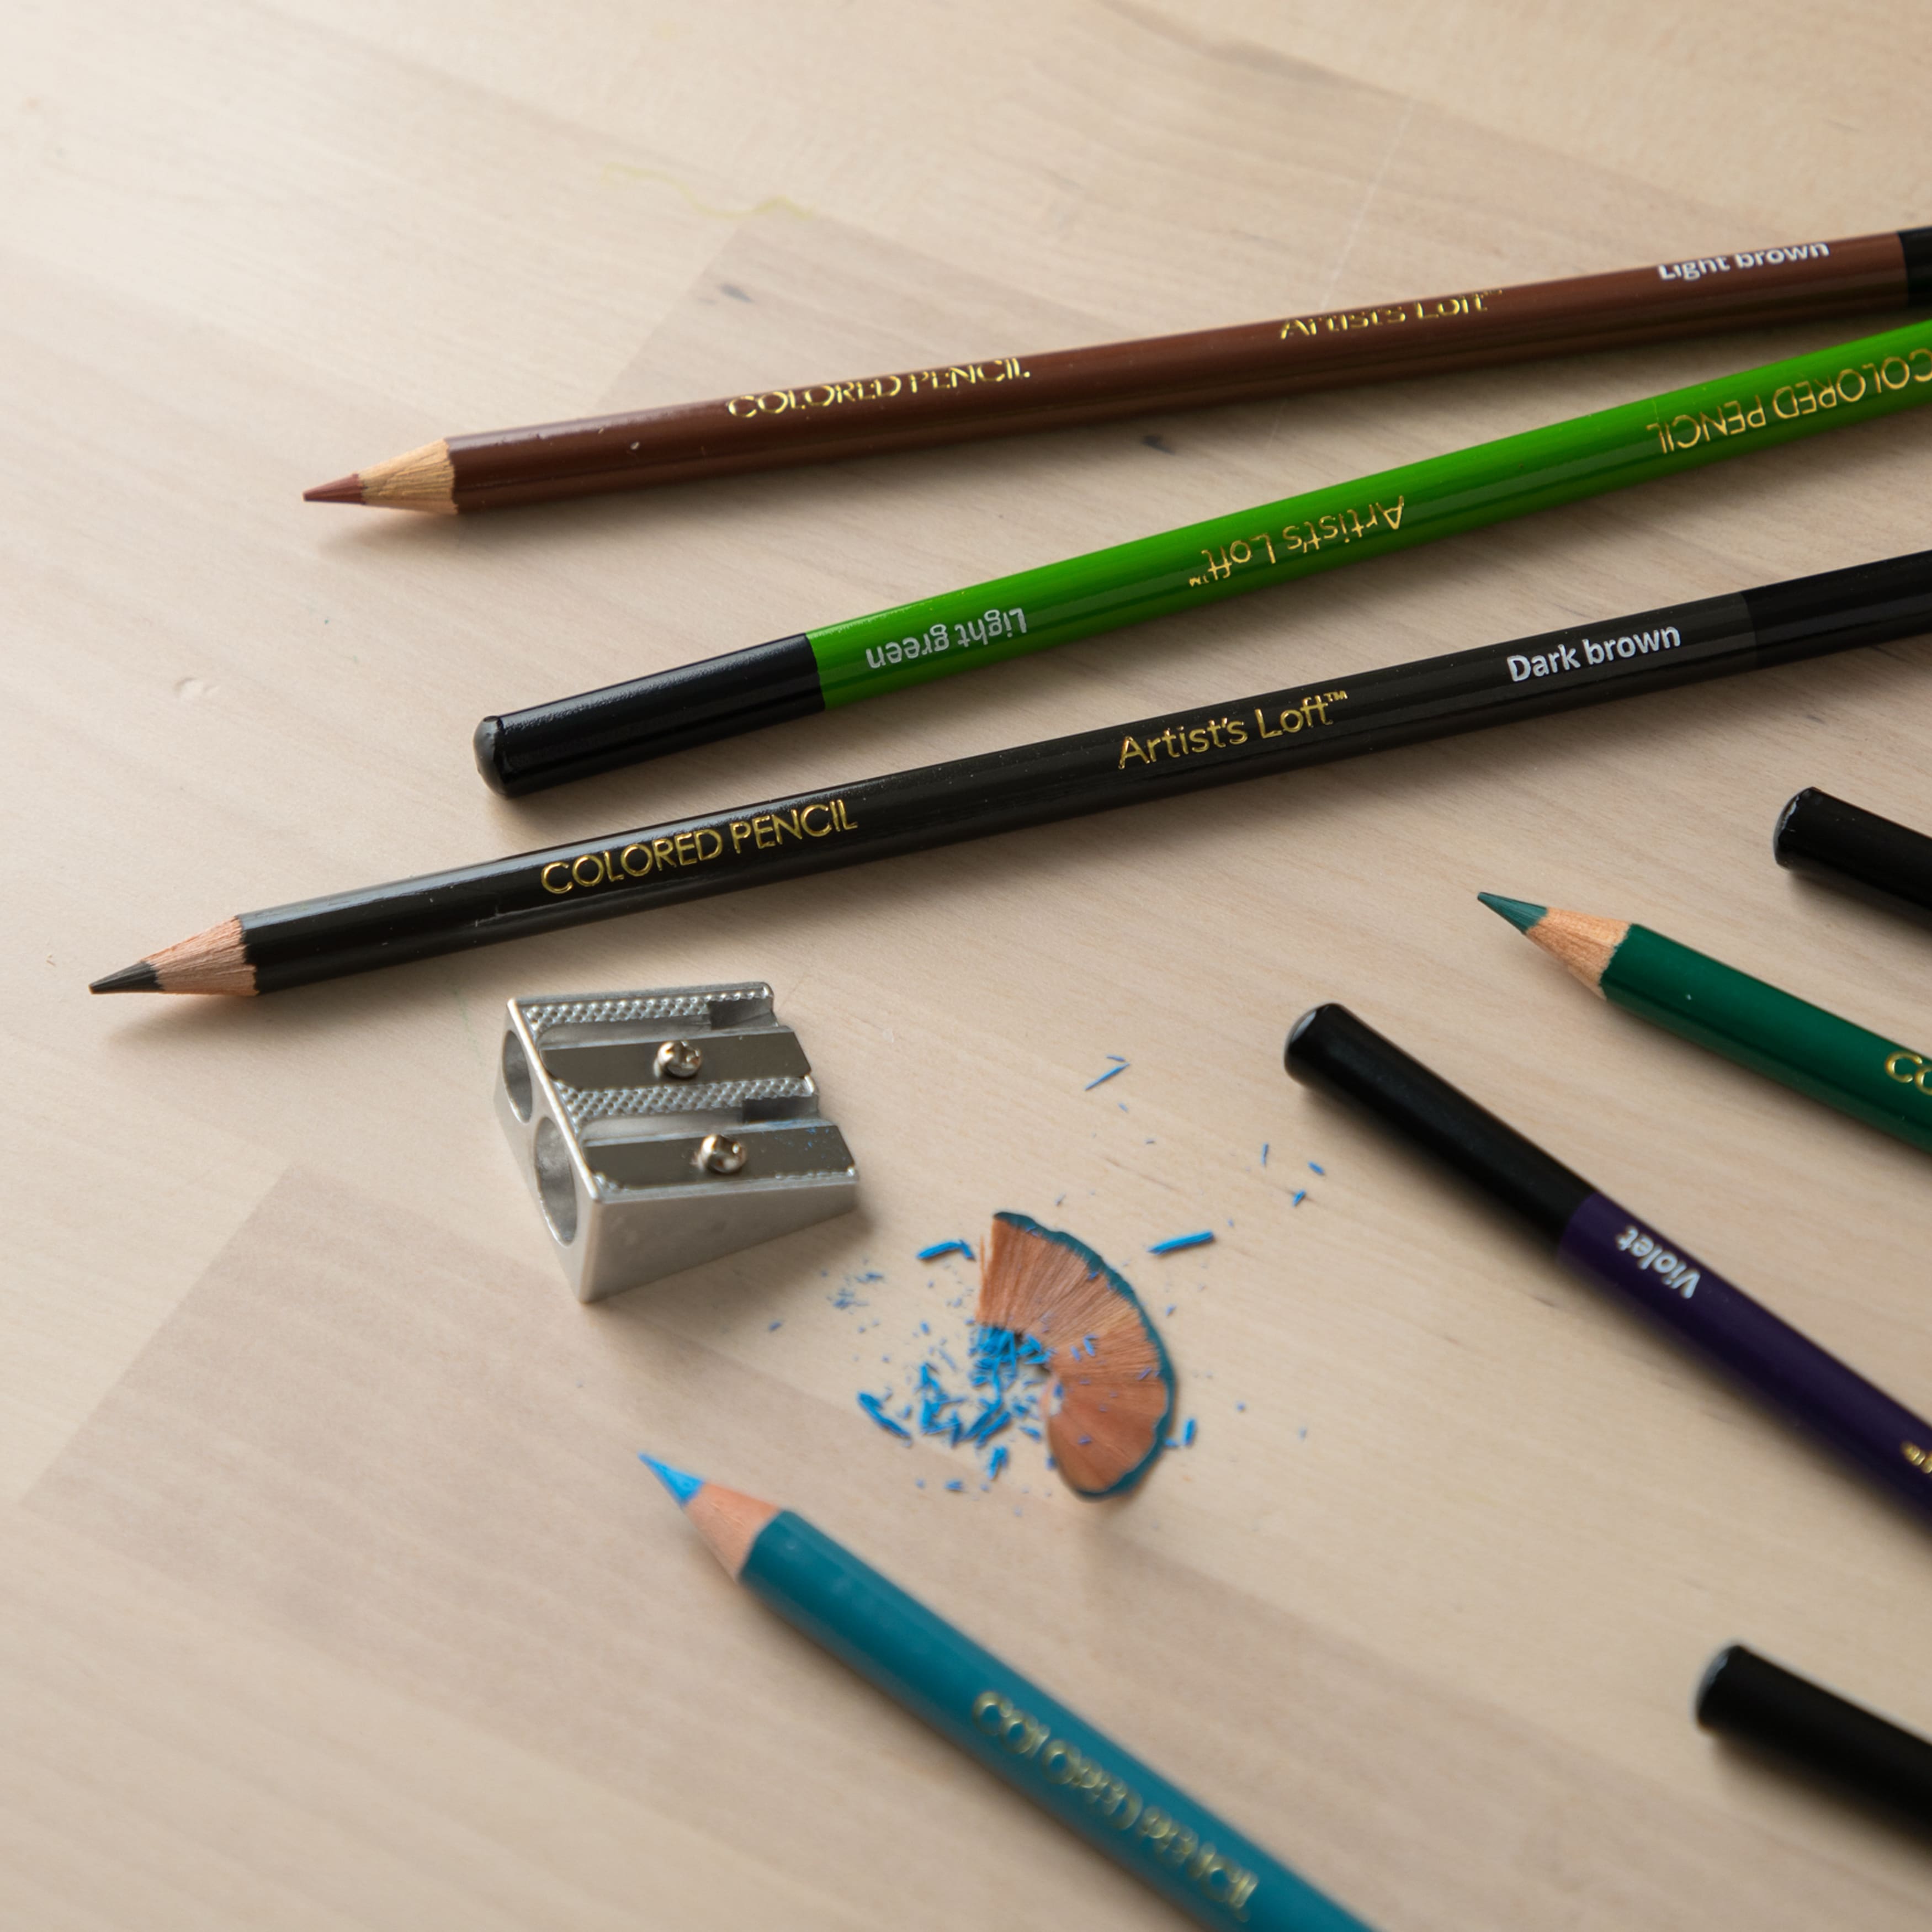 Artist's Loft Colored Pencils, 12 Count